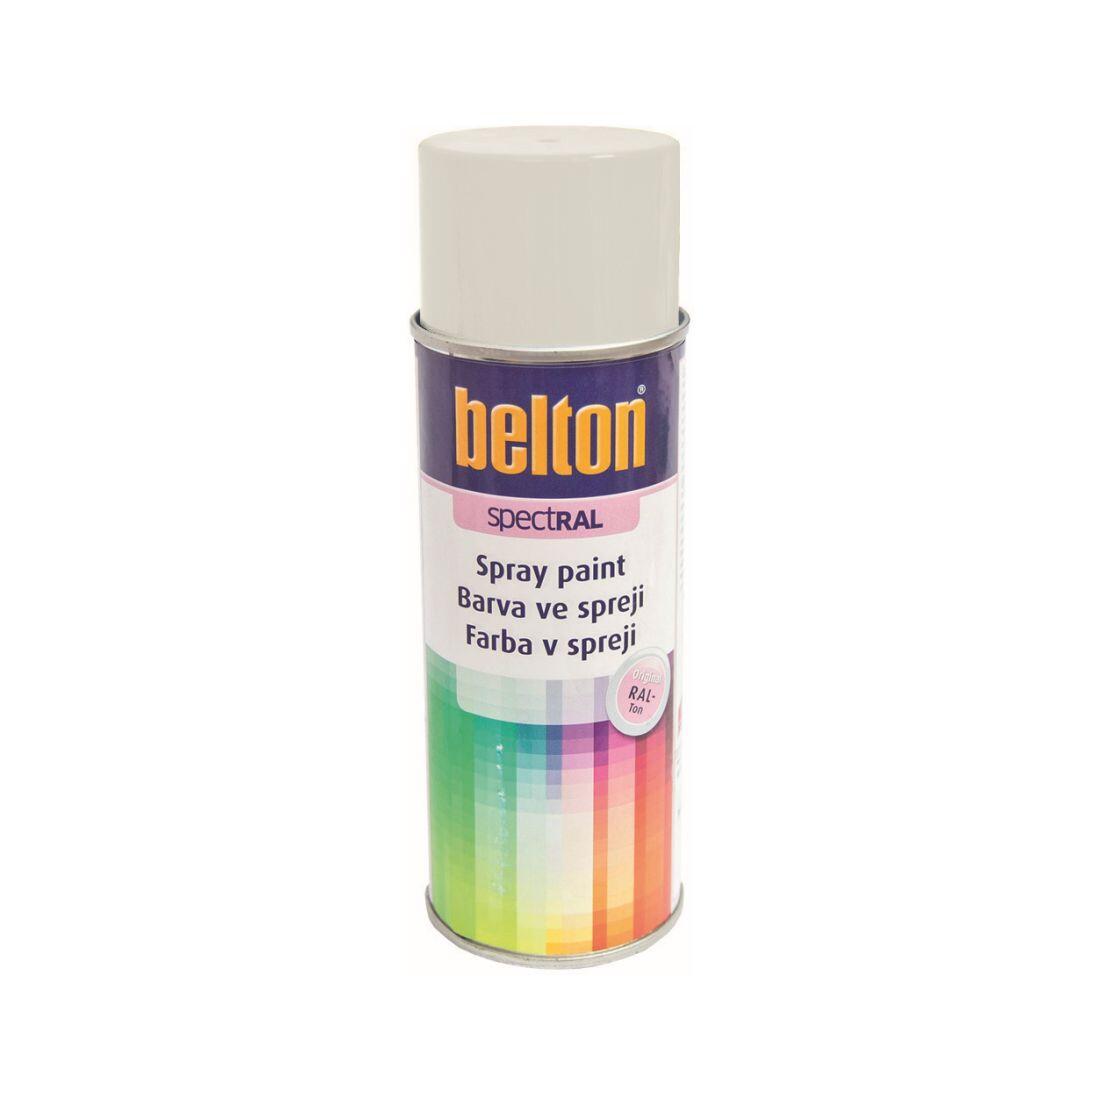 barva ve spreji BELTON RAL 9003, 400ml BÍ signální 0.31 Kg MAXMIX Sklad14 825571 5